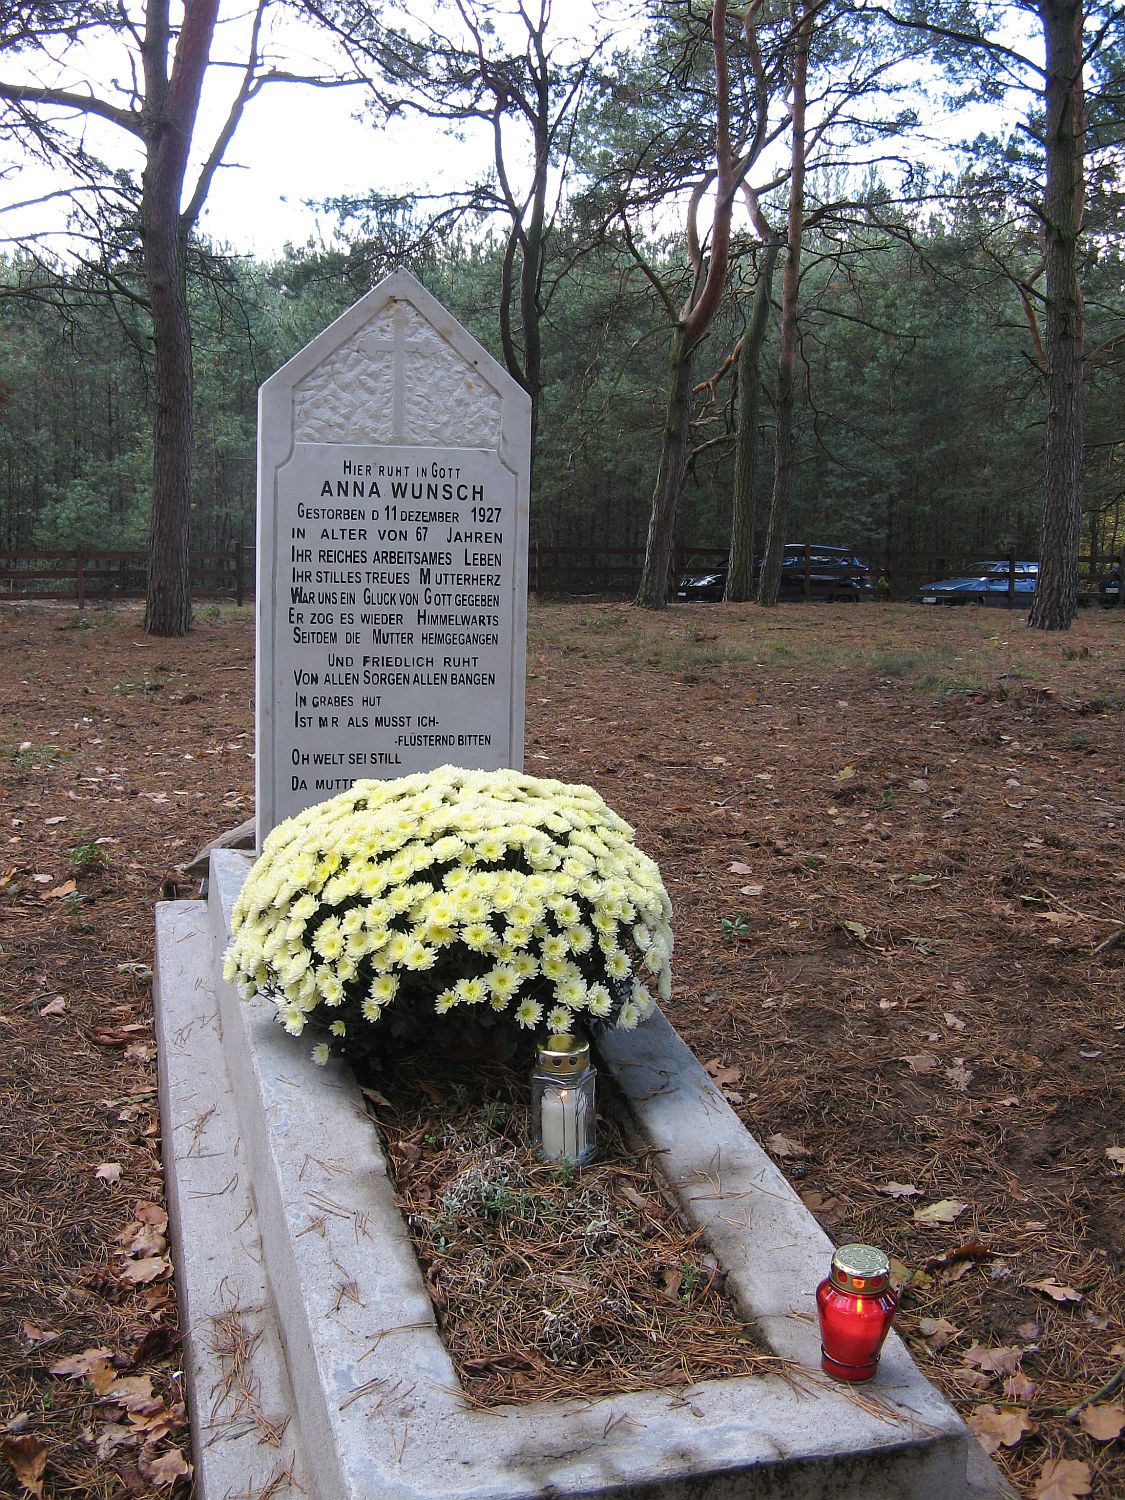 Odnowiony nagrobek Anny Wunsch na cmentarzu ewangelickim w Biaasach, 3.11.2012 r.